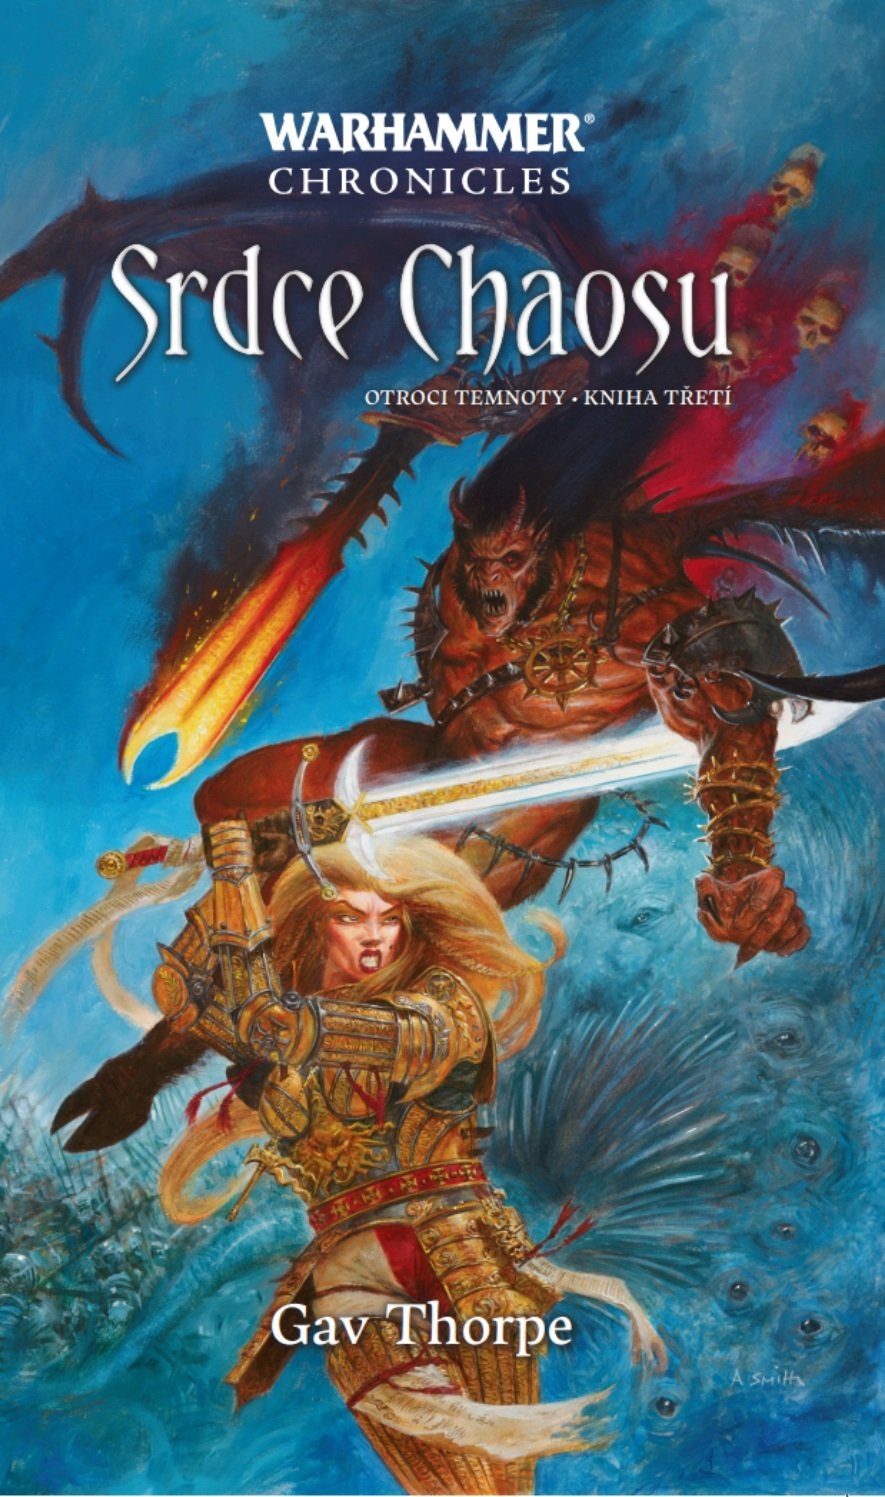 Warhammer Srdce Chaosu, 2. vydání - Gav Thorpe